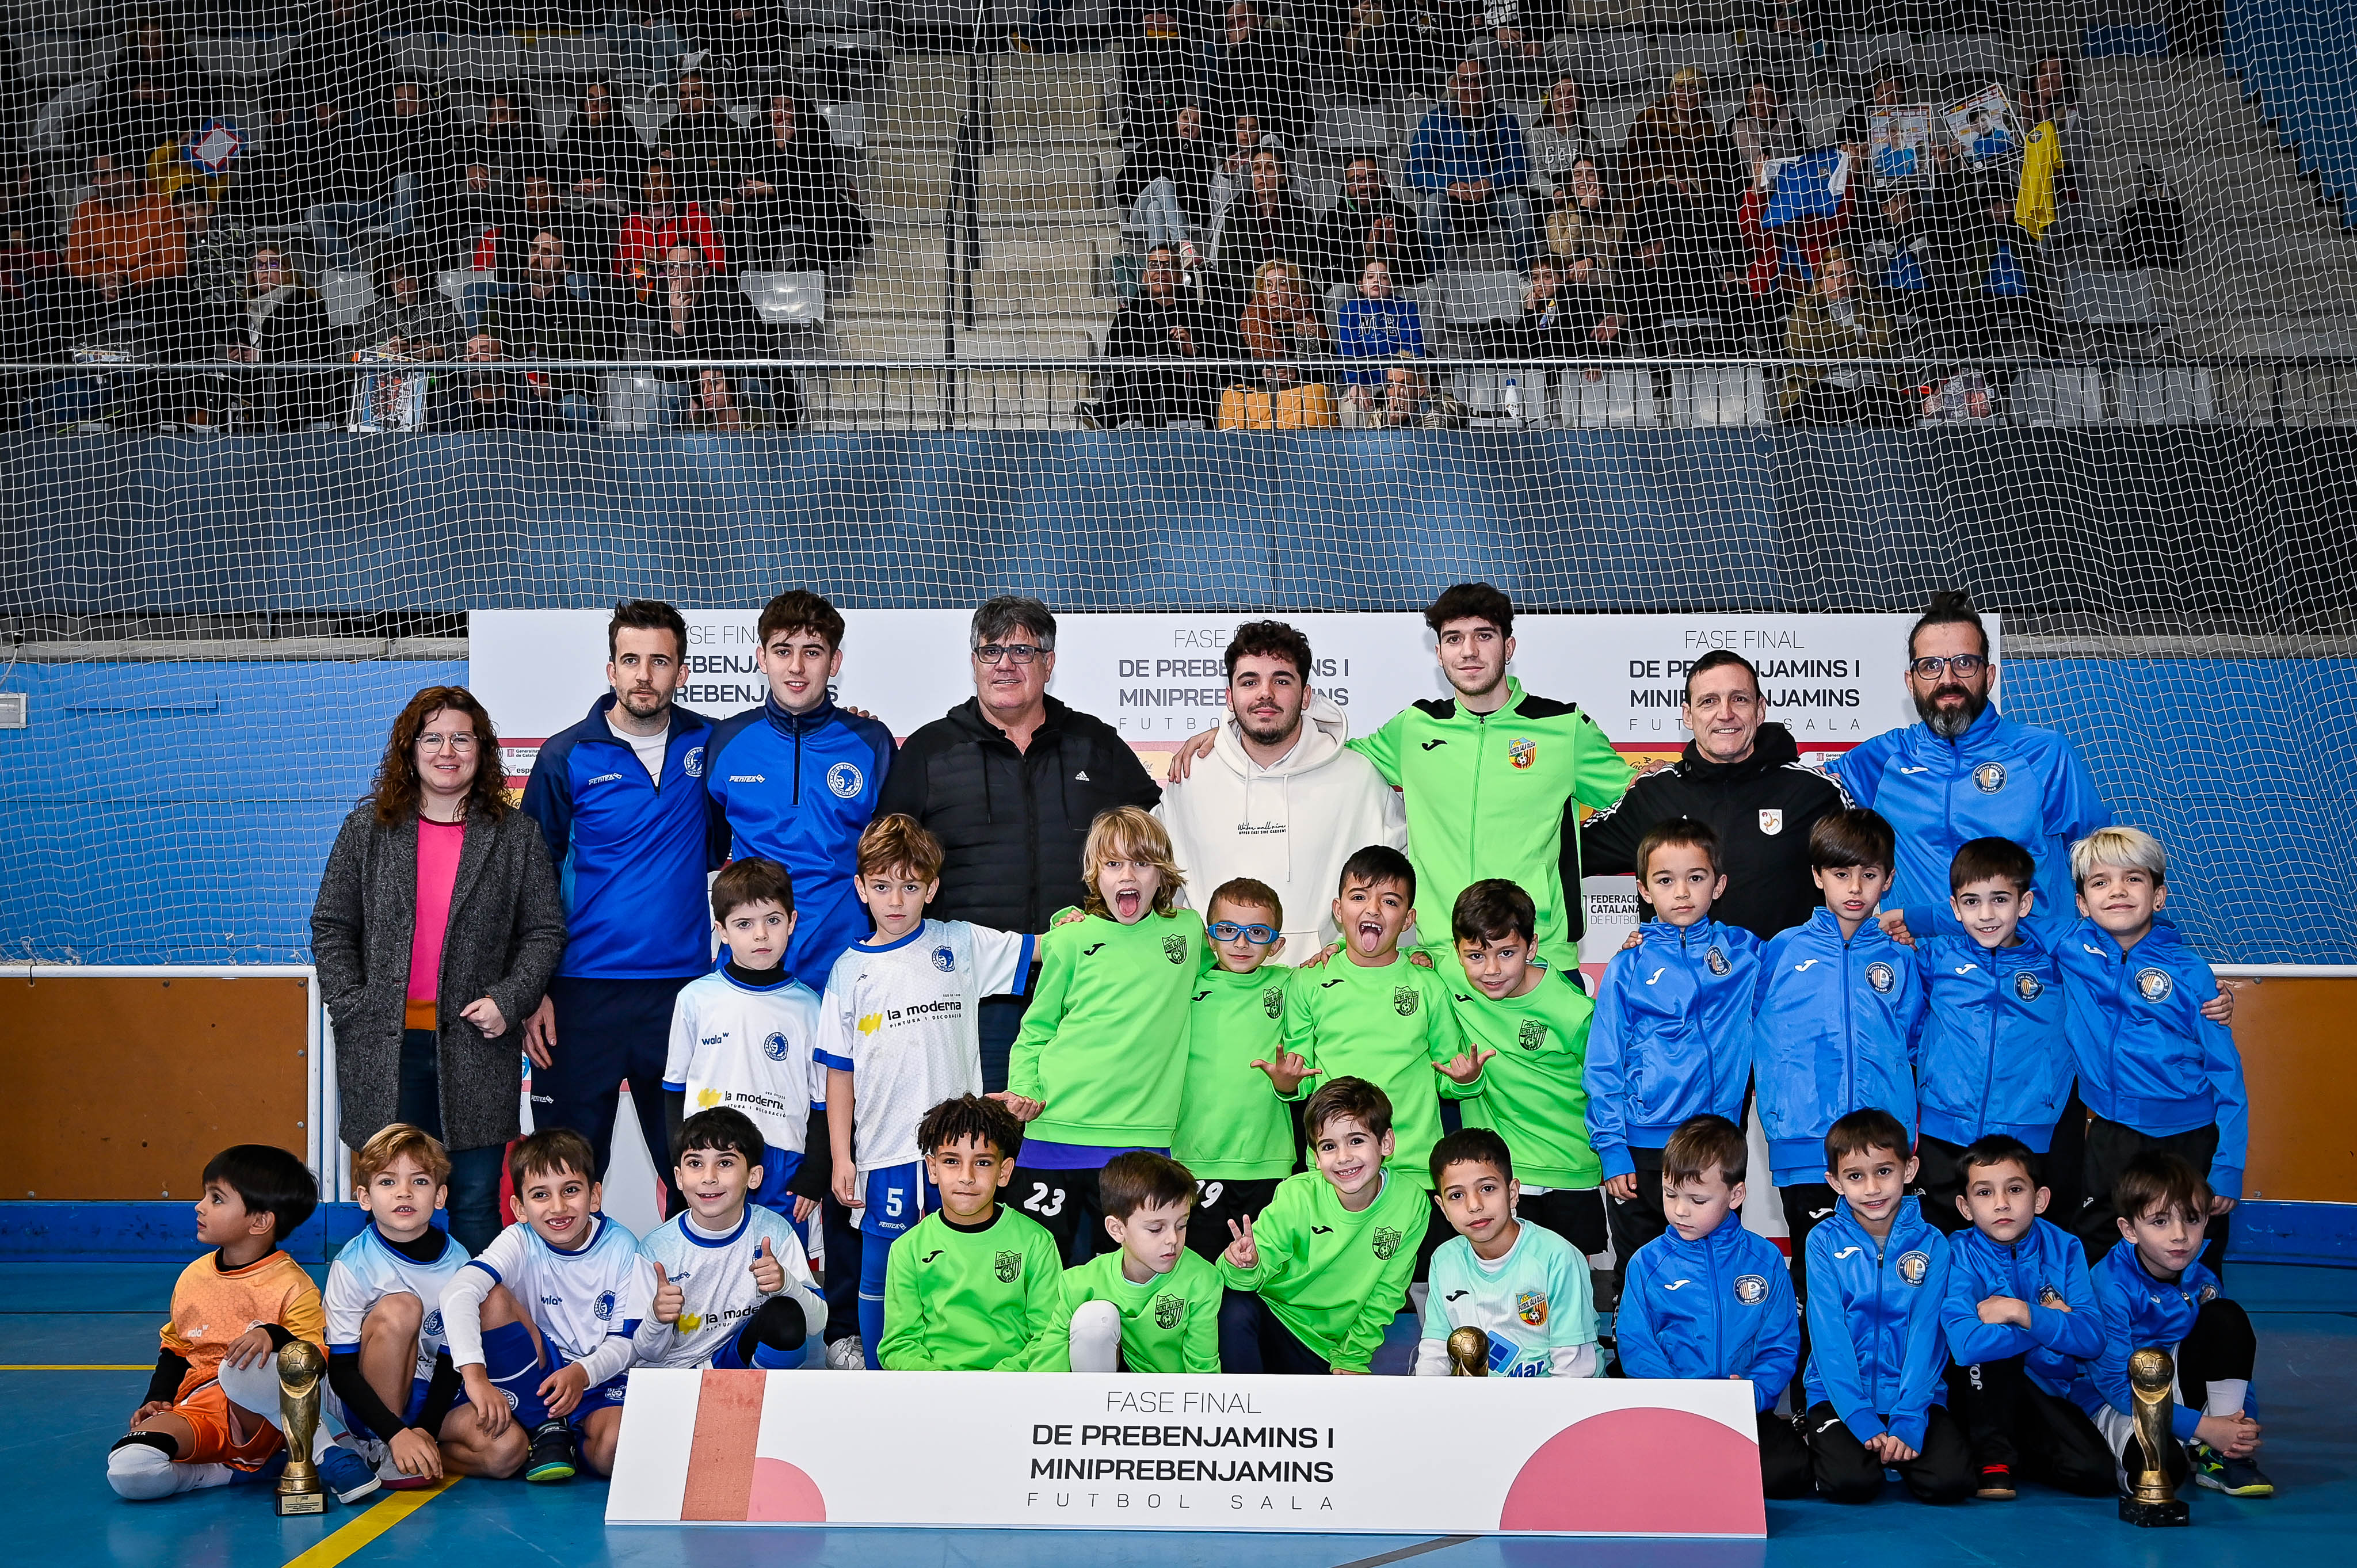 GRUP O - PREBENJAMINS: Futsal Arenys de Mar 'A', Olesa FS 'B' i Natació Sabadell 'A'